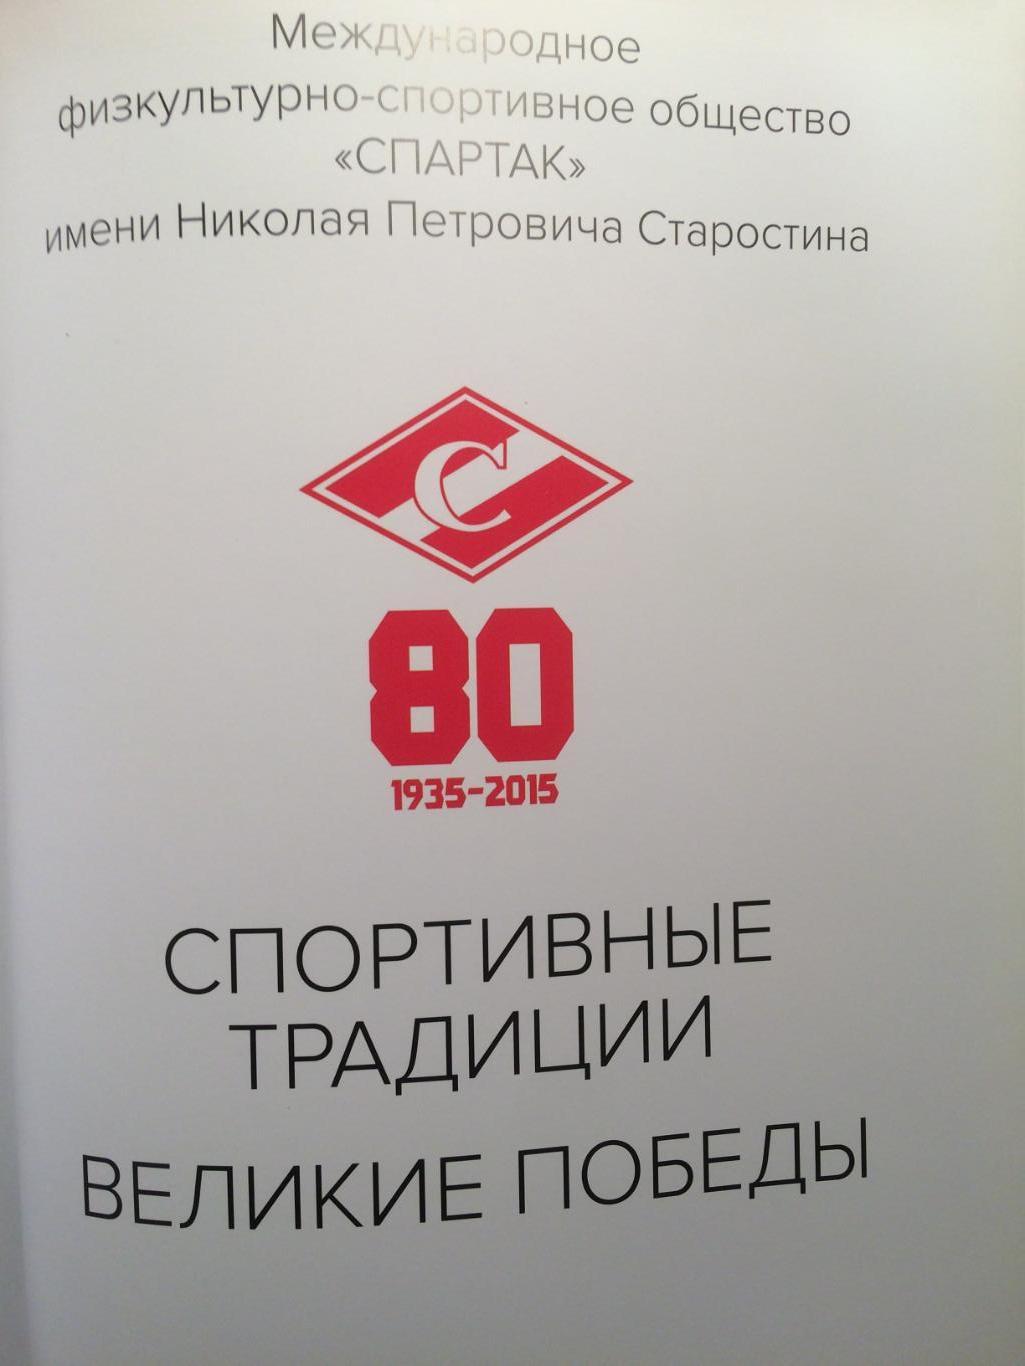 Фотоальбом Спартак - 80 Великие победы 1935-2015 1